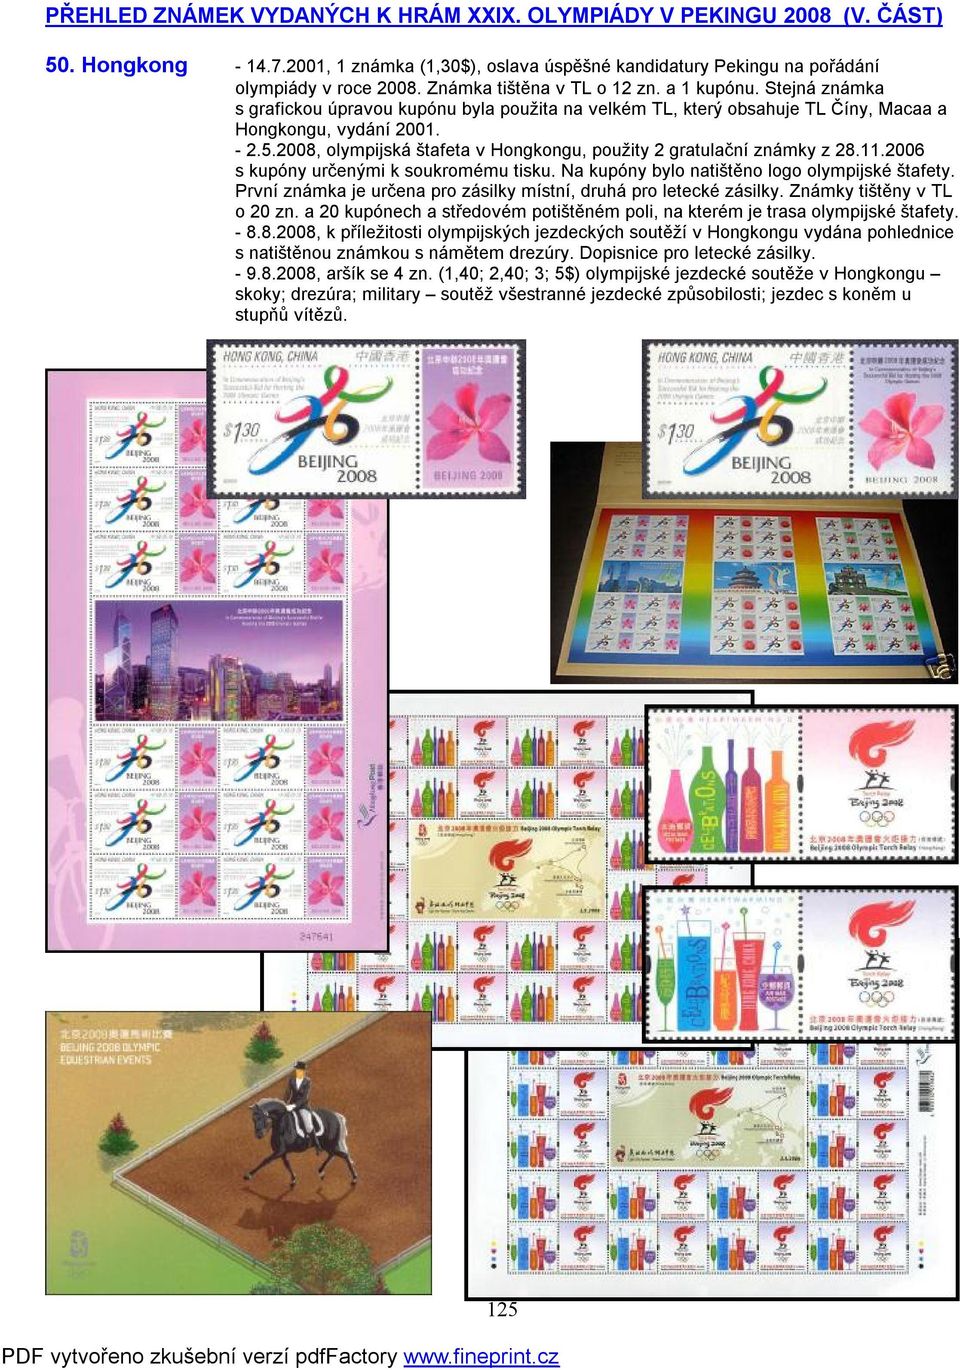 2008, olympijská štafeta v Hongkongu, použity 2 gratulační známky z 28.11.2006 s kupóny určenými k soukromému tisku. Na kupóny bylo natištěno logo olympijské štafety.